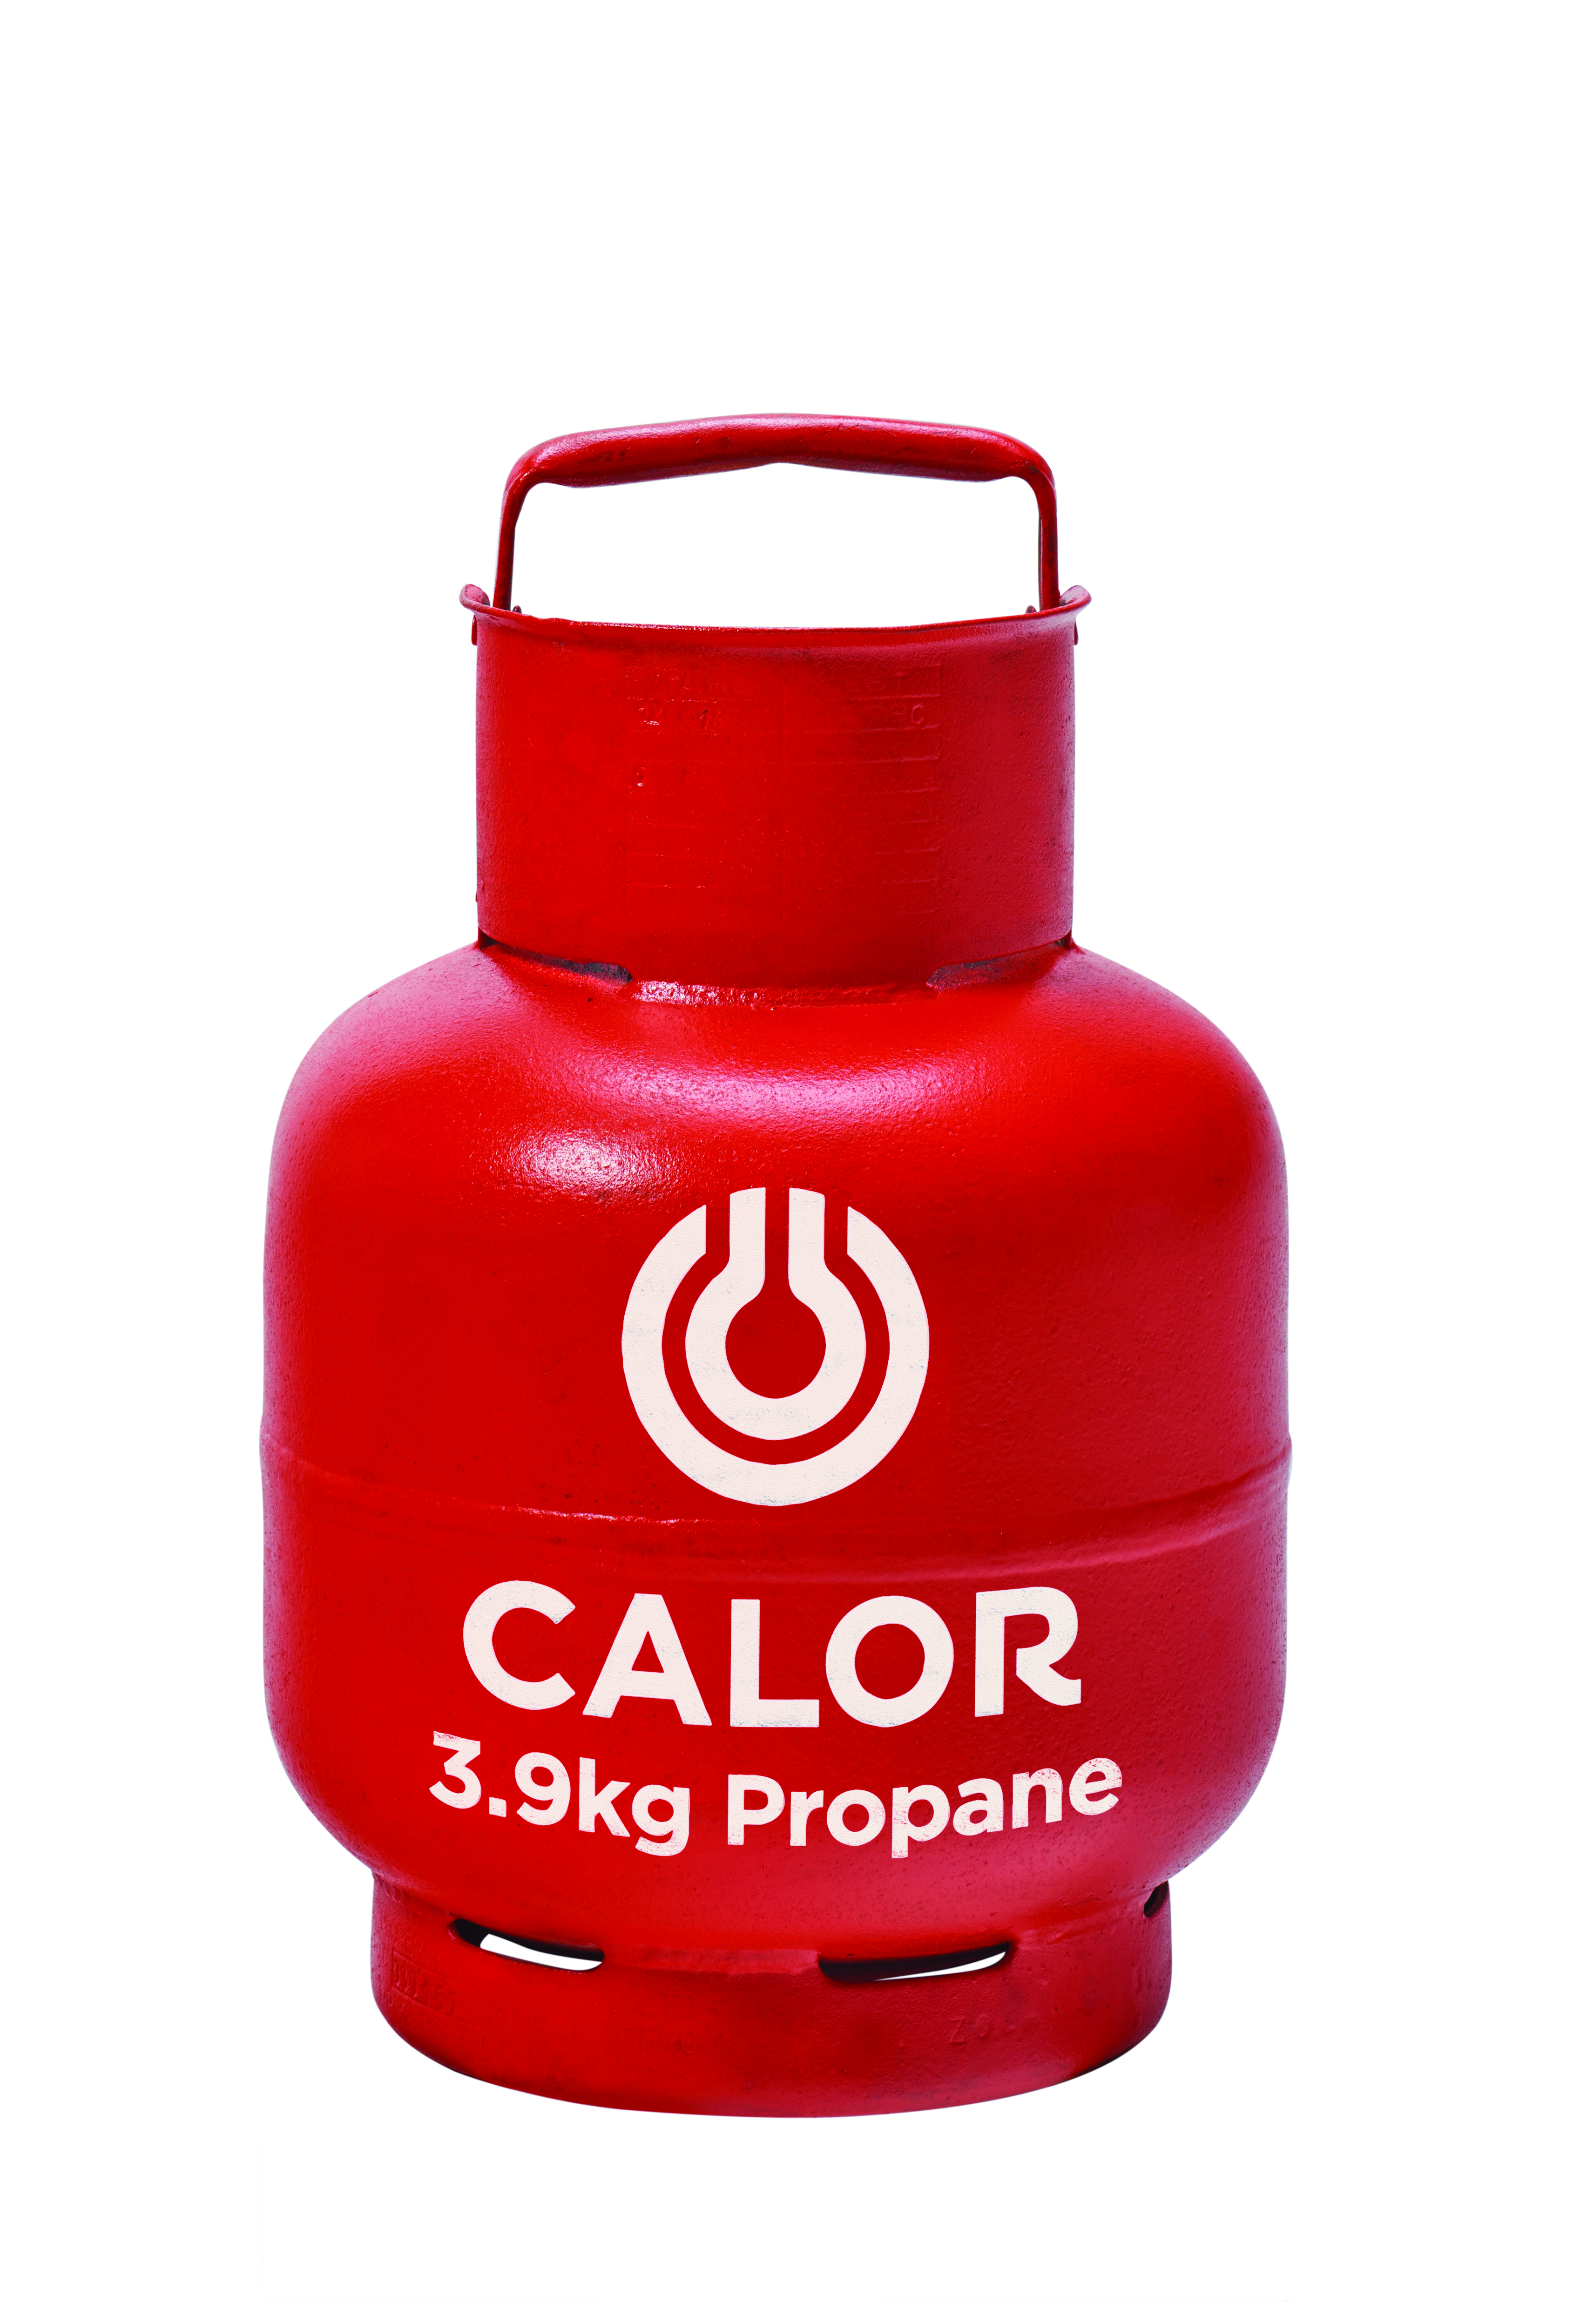 3.9kg Propane Calor Gas Bottles Hampshire